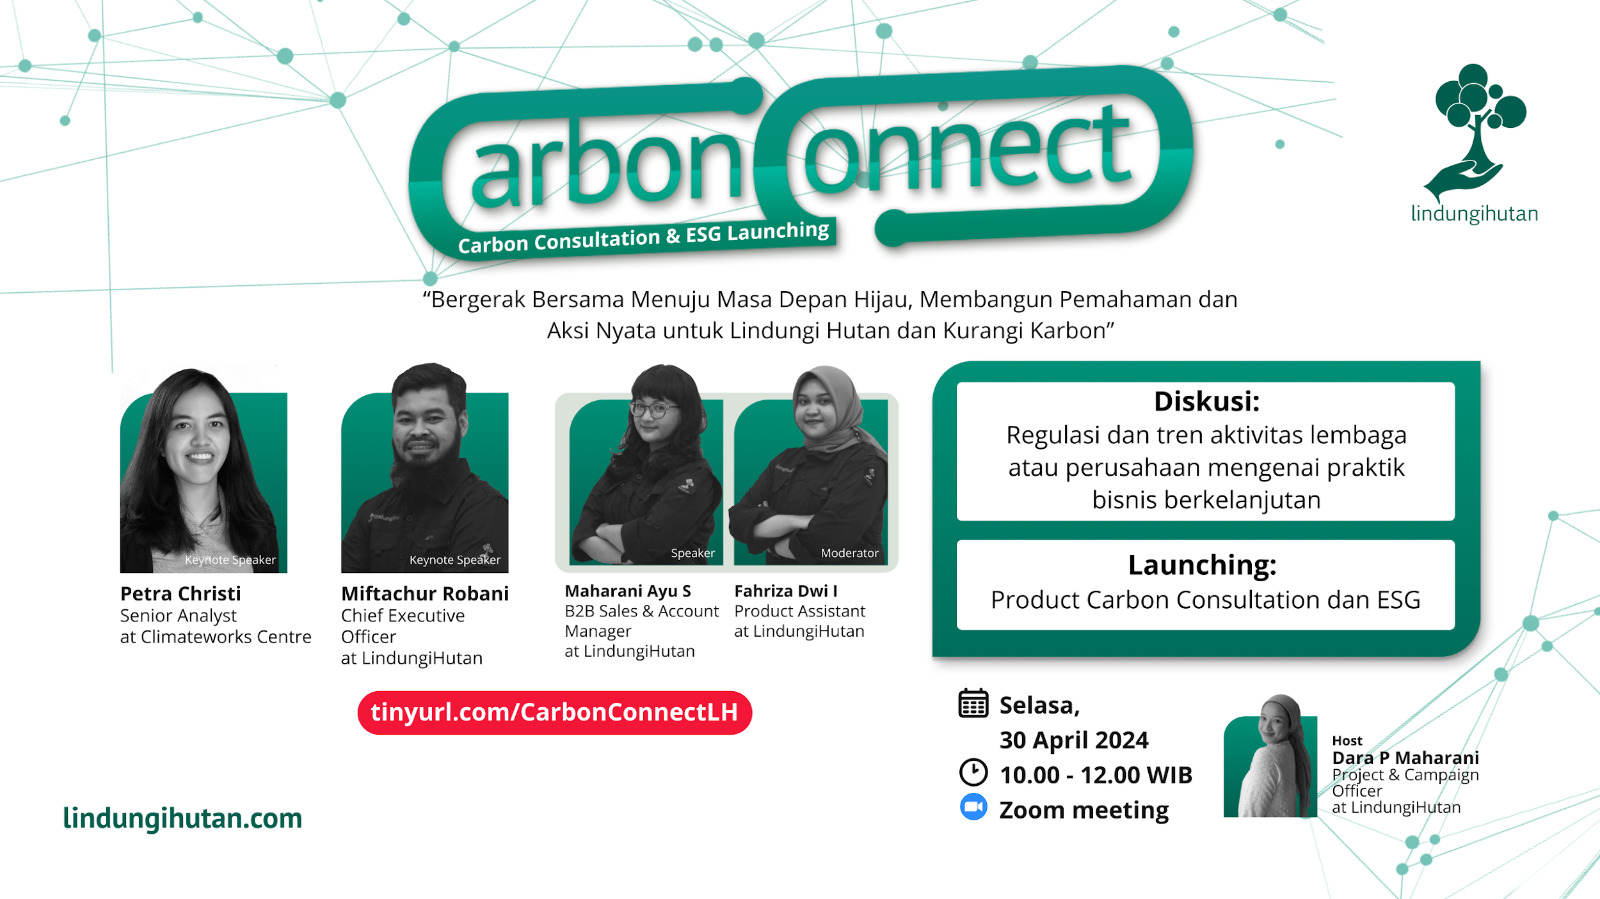 LindungiHutan Menyelenggarakan Webinar Carbon Connect: Peluncuran Konsultasi Karbon & ESG